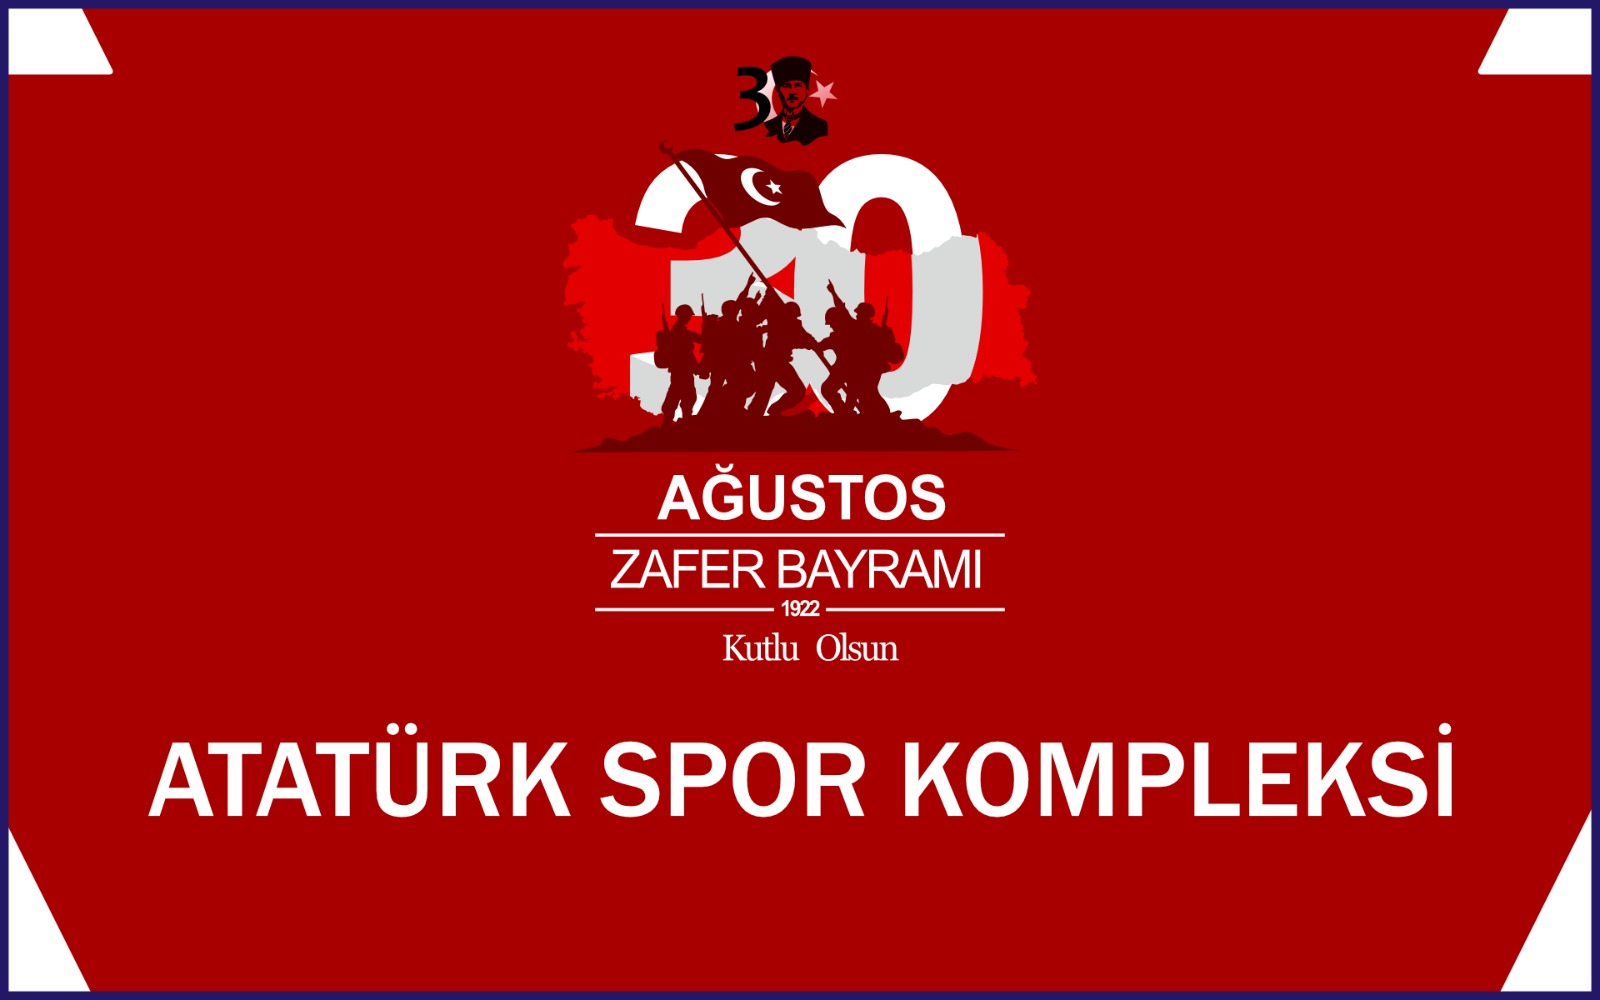 Atatürk Spor Kompleksinden 30 Ağustos kutlama mesajı